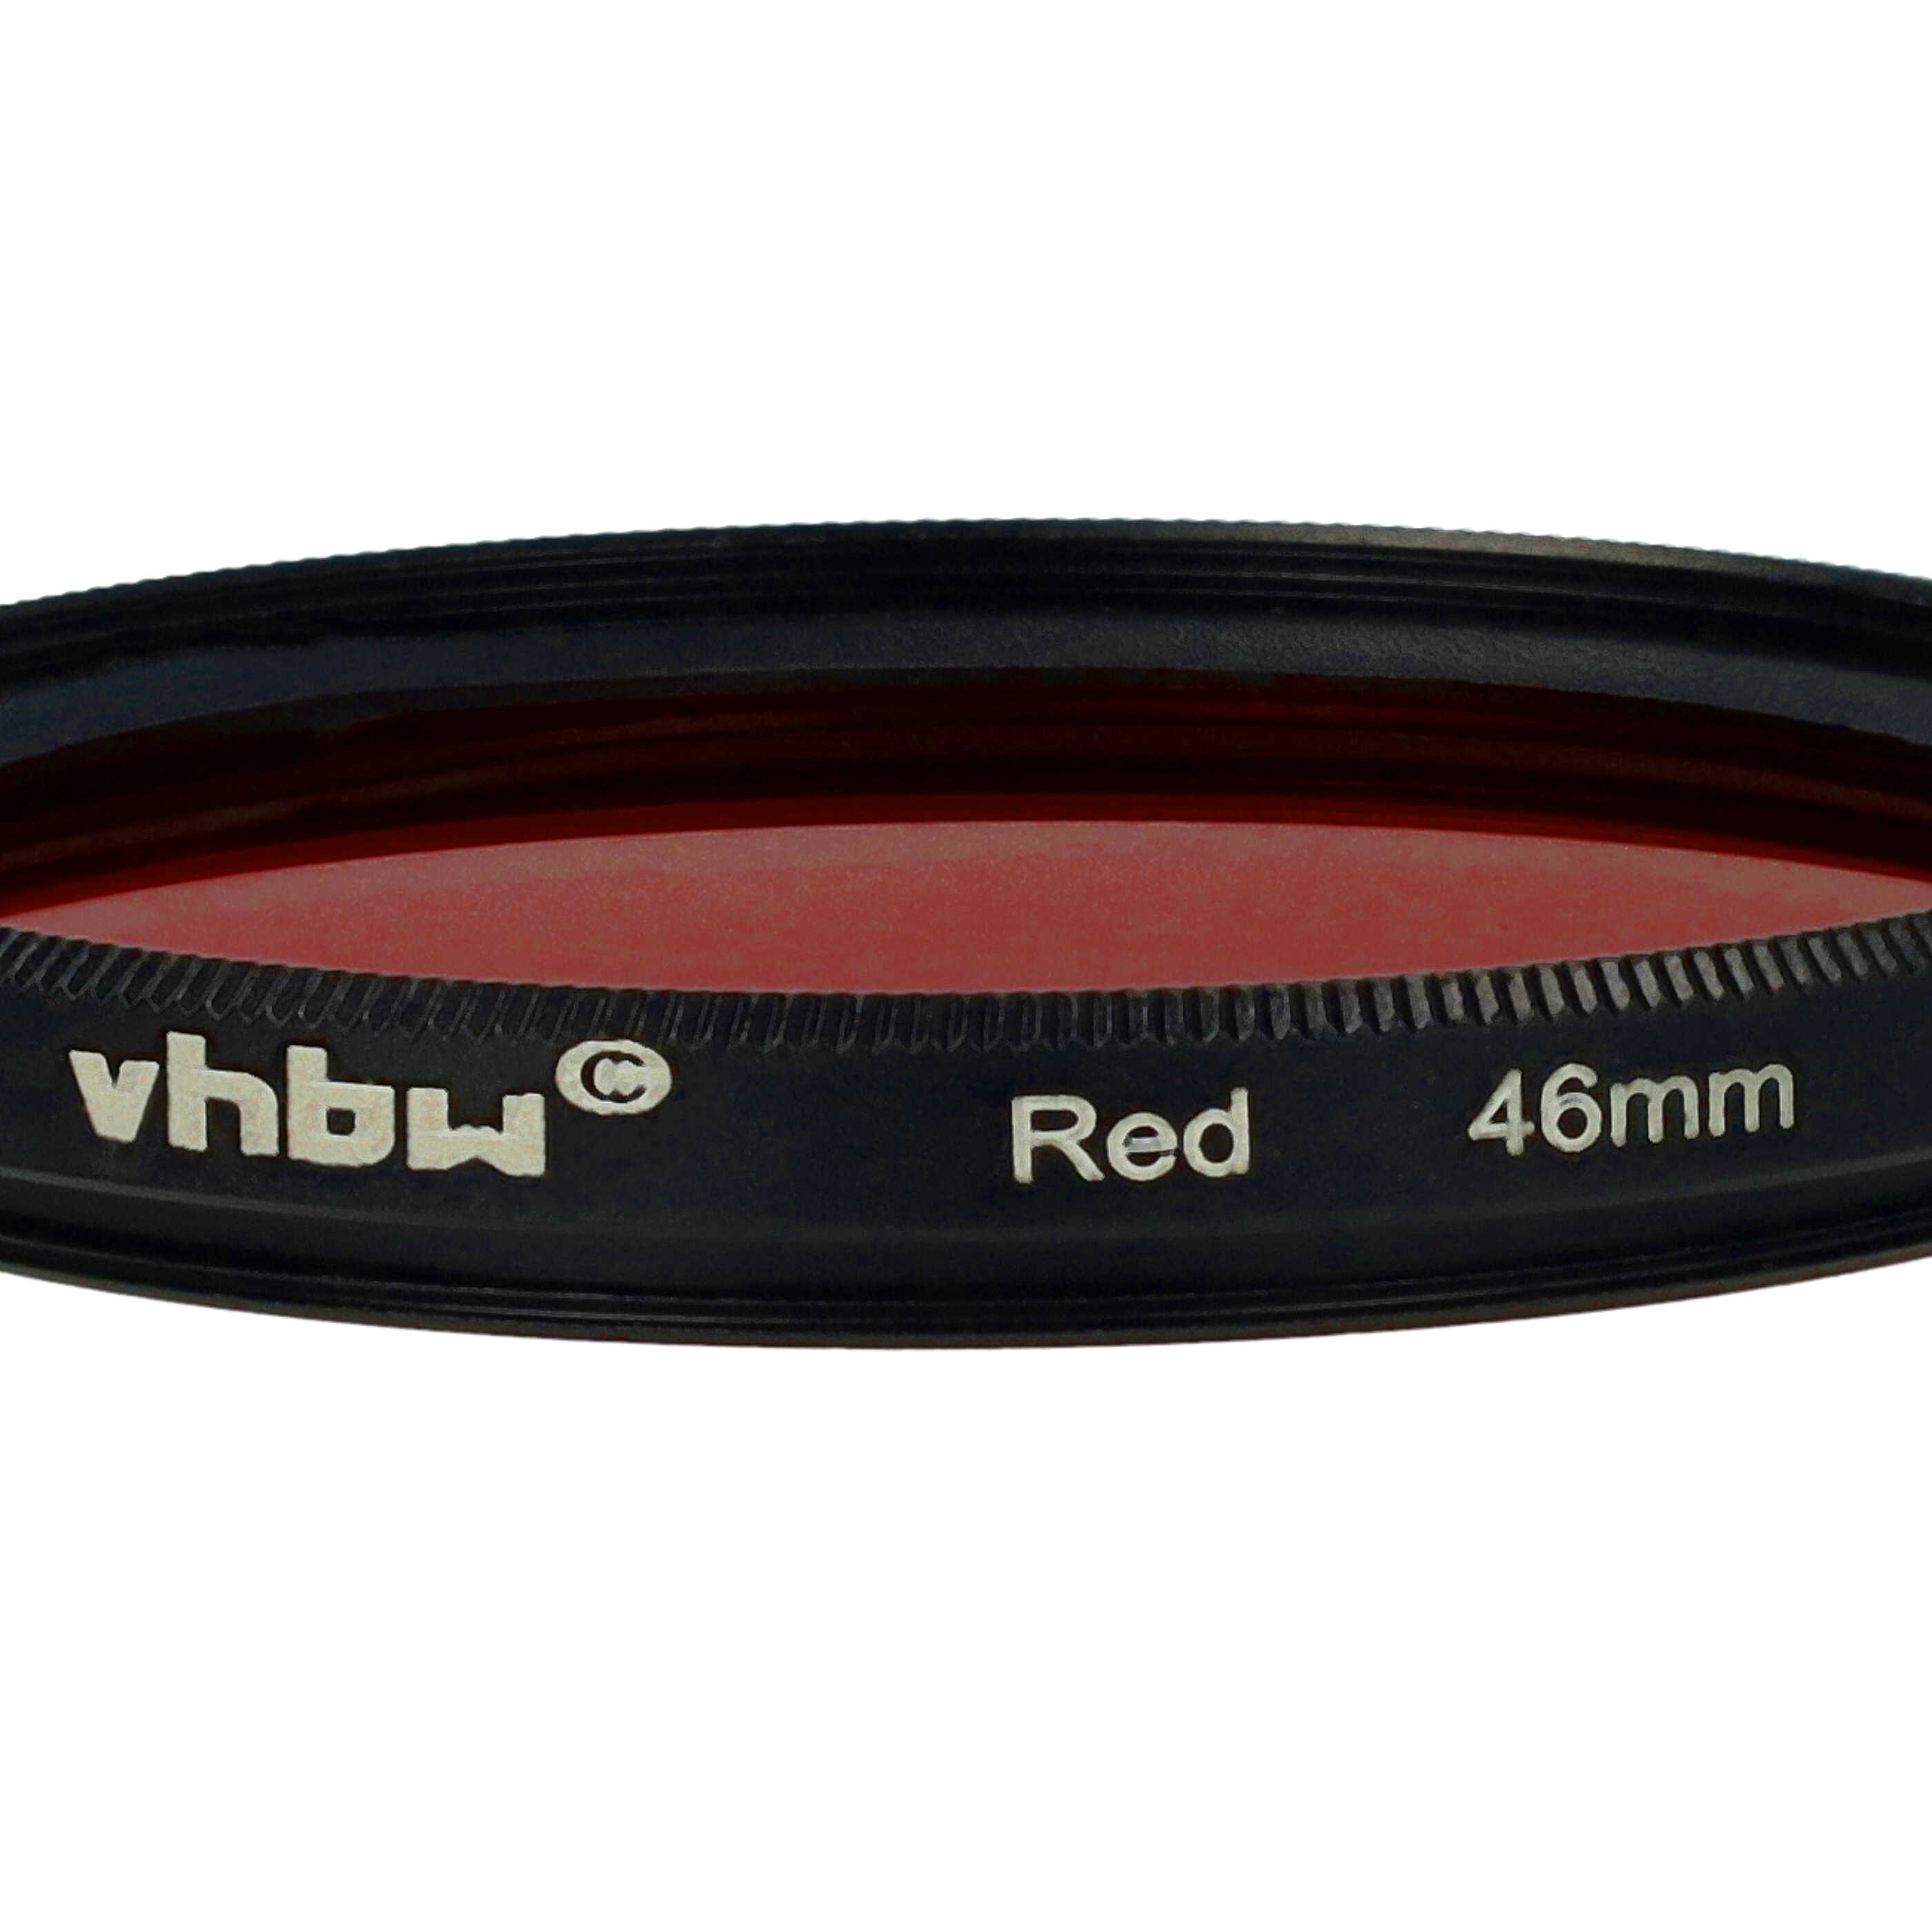 Filtre de couleur rouge pour objectifs d'appareils photo de 46 mm - Filtre rouge